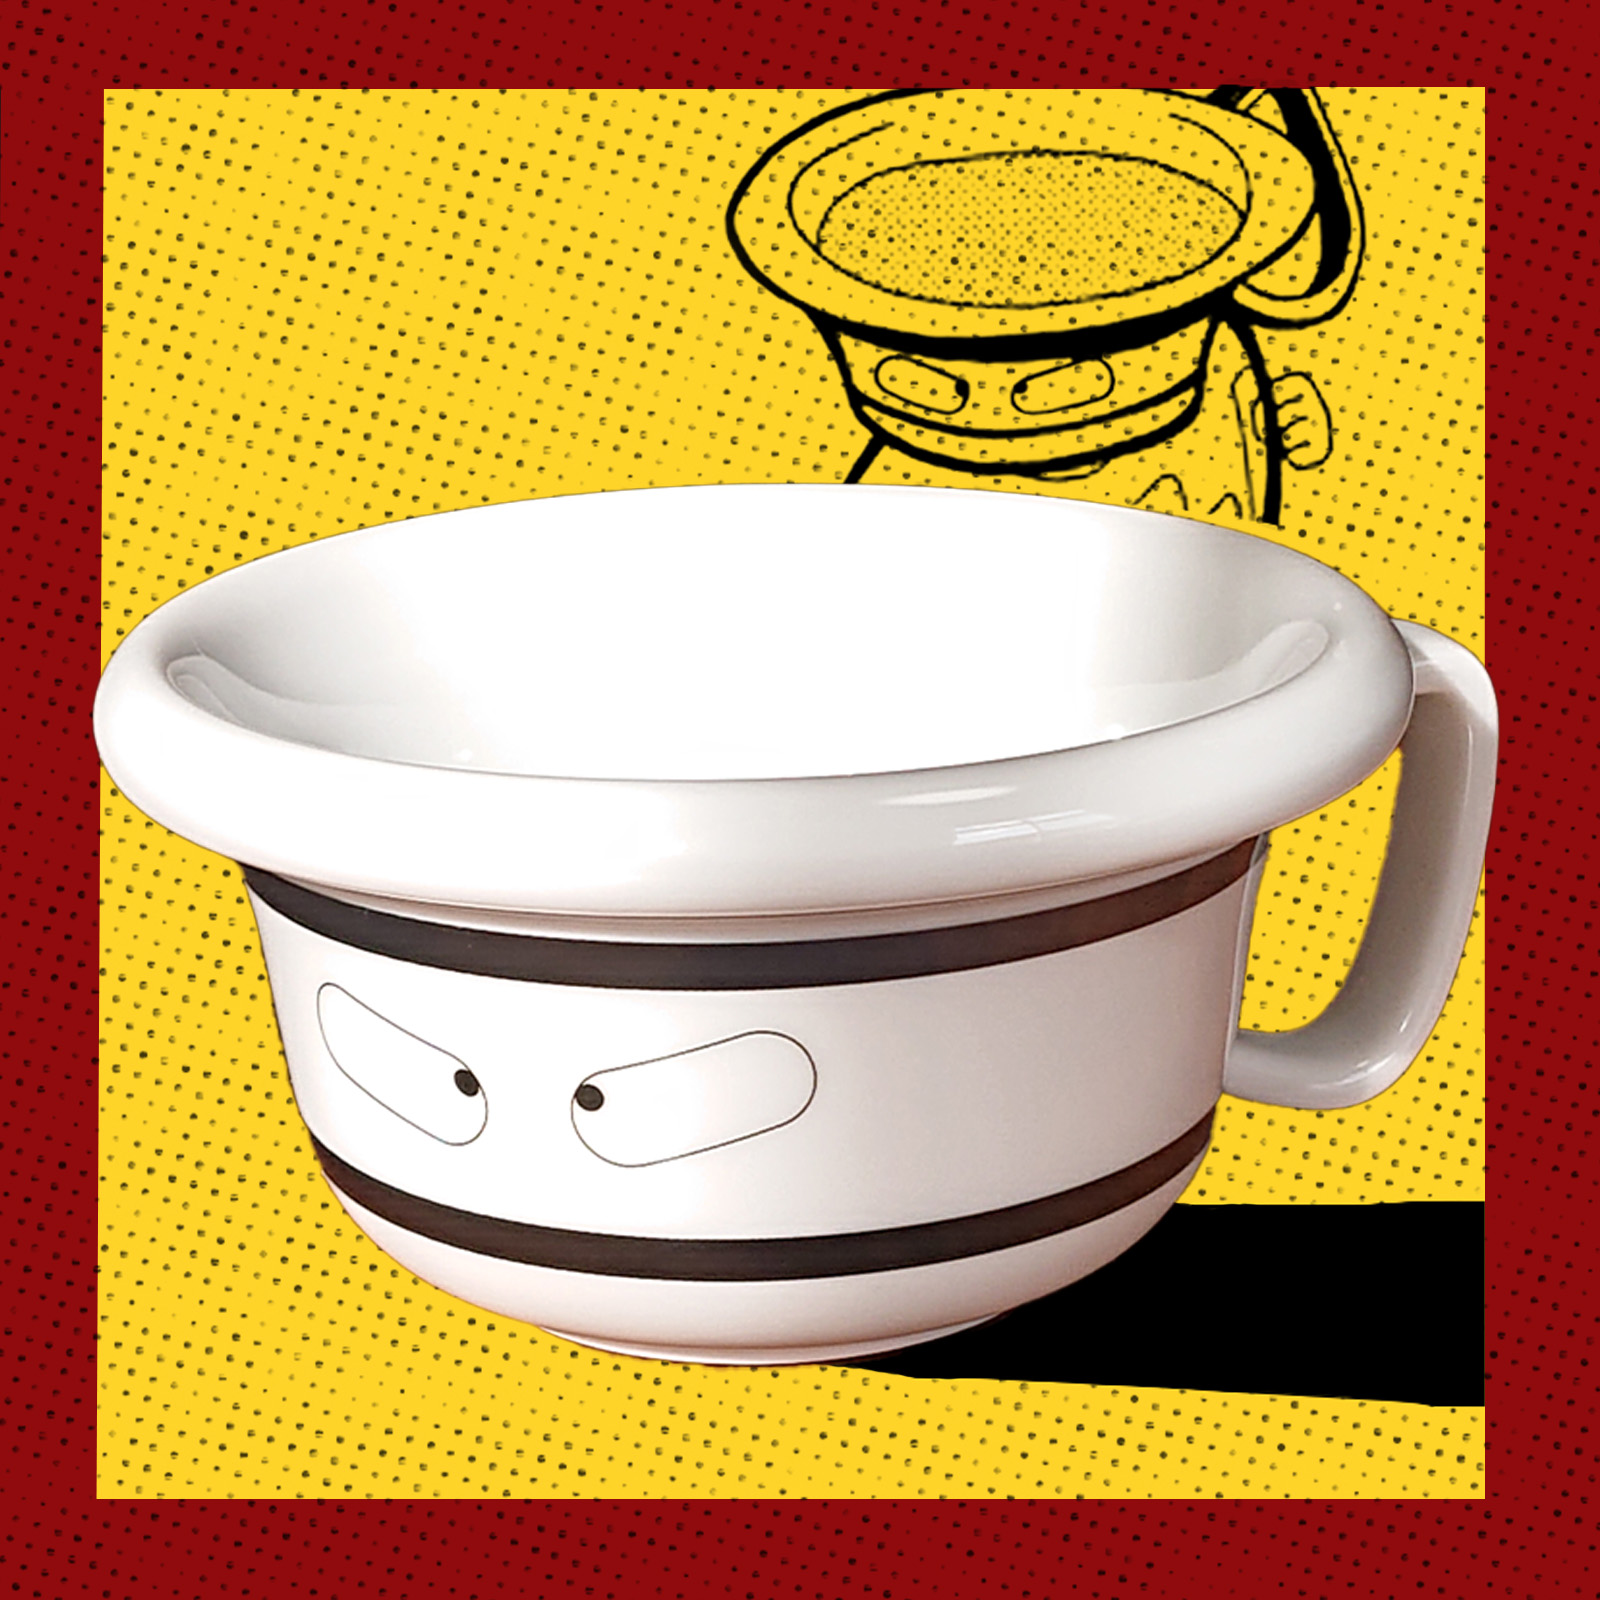 キン肉マン グッズ ティーパックマン ティーカップ おもしろ ウォーズマン 紅茶 食器 雑貨 プレゼント画像